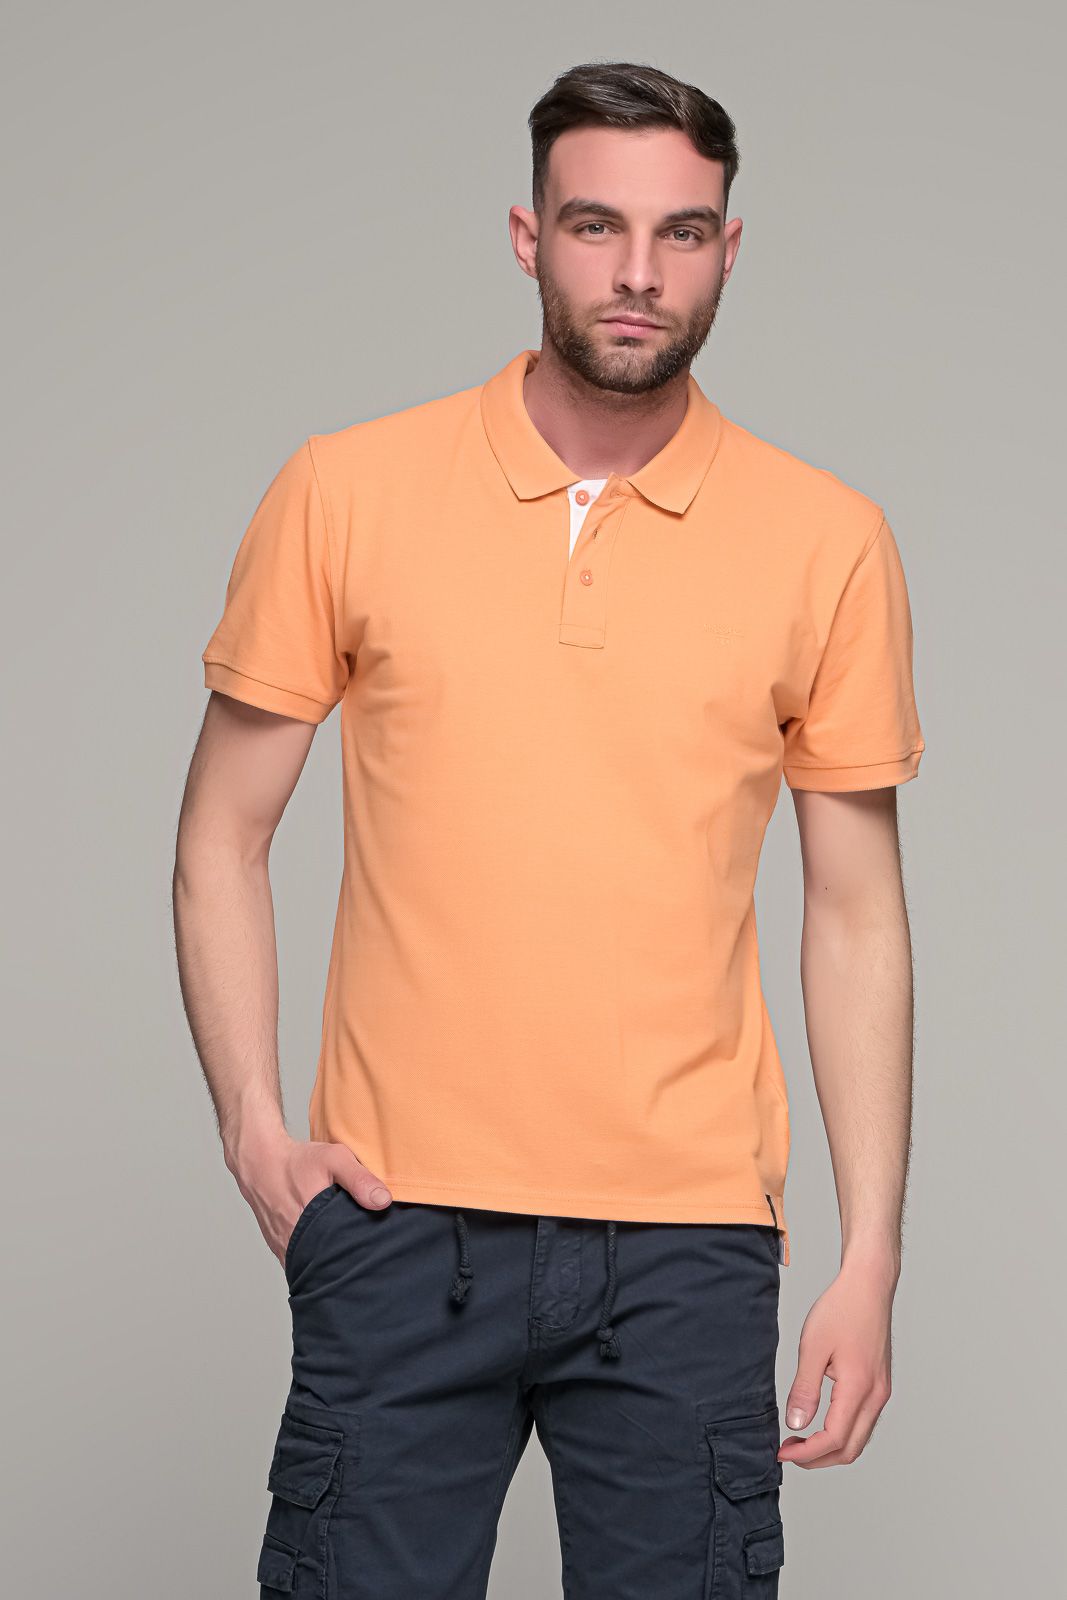 Πορτοκαλί ανδρικό πόλο μπλουζάκι MASSARO με λευκή πατιλέτα - Regular fit